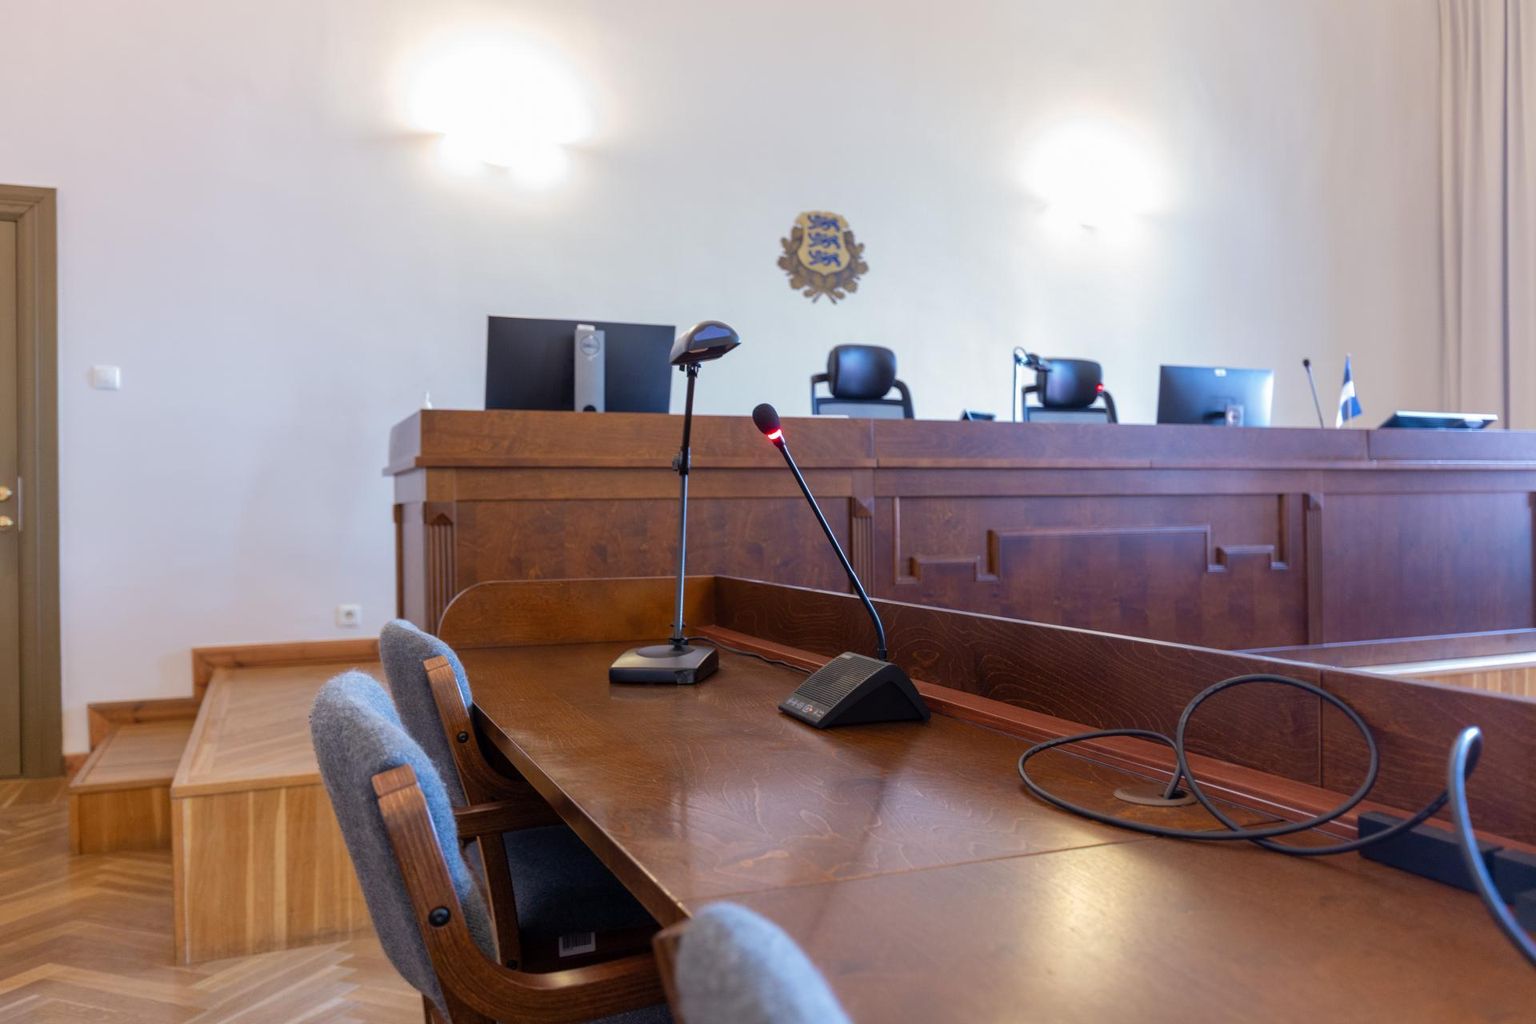 2. augustil ootasid kohus, prokurör ja Sakala ajaleht Sulev Jänest Viljandi kohtusaalis, aga talle mõeldud kohtupink jäi tühjaks, sest ta ei tulnud kohale.